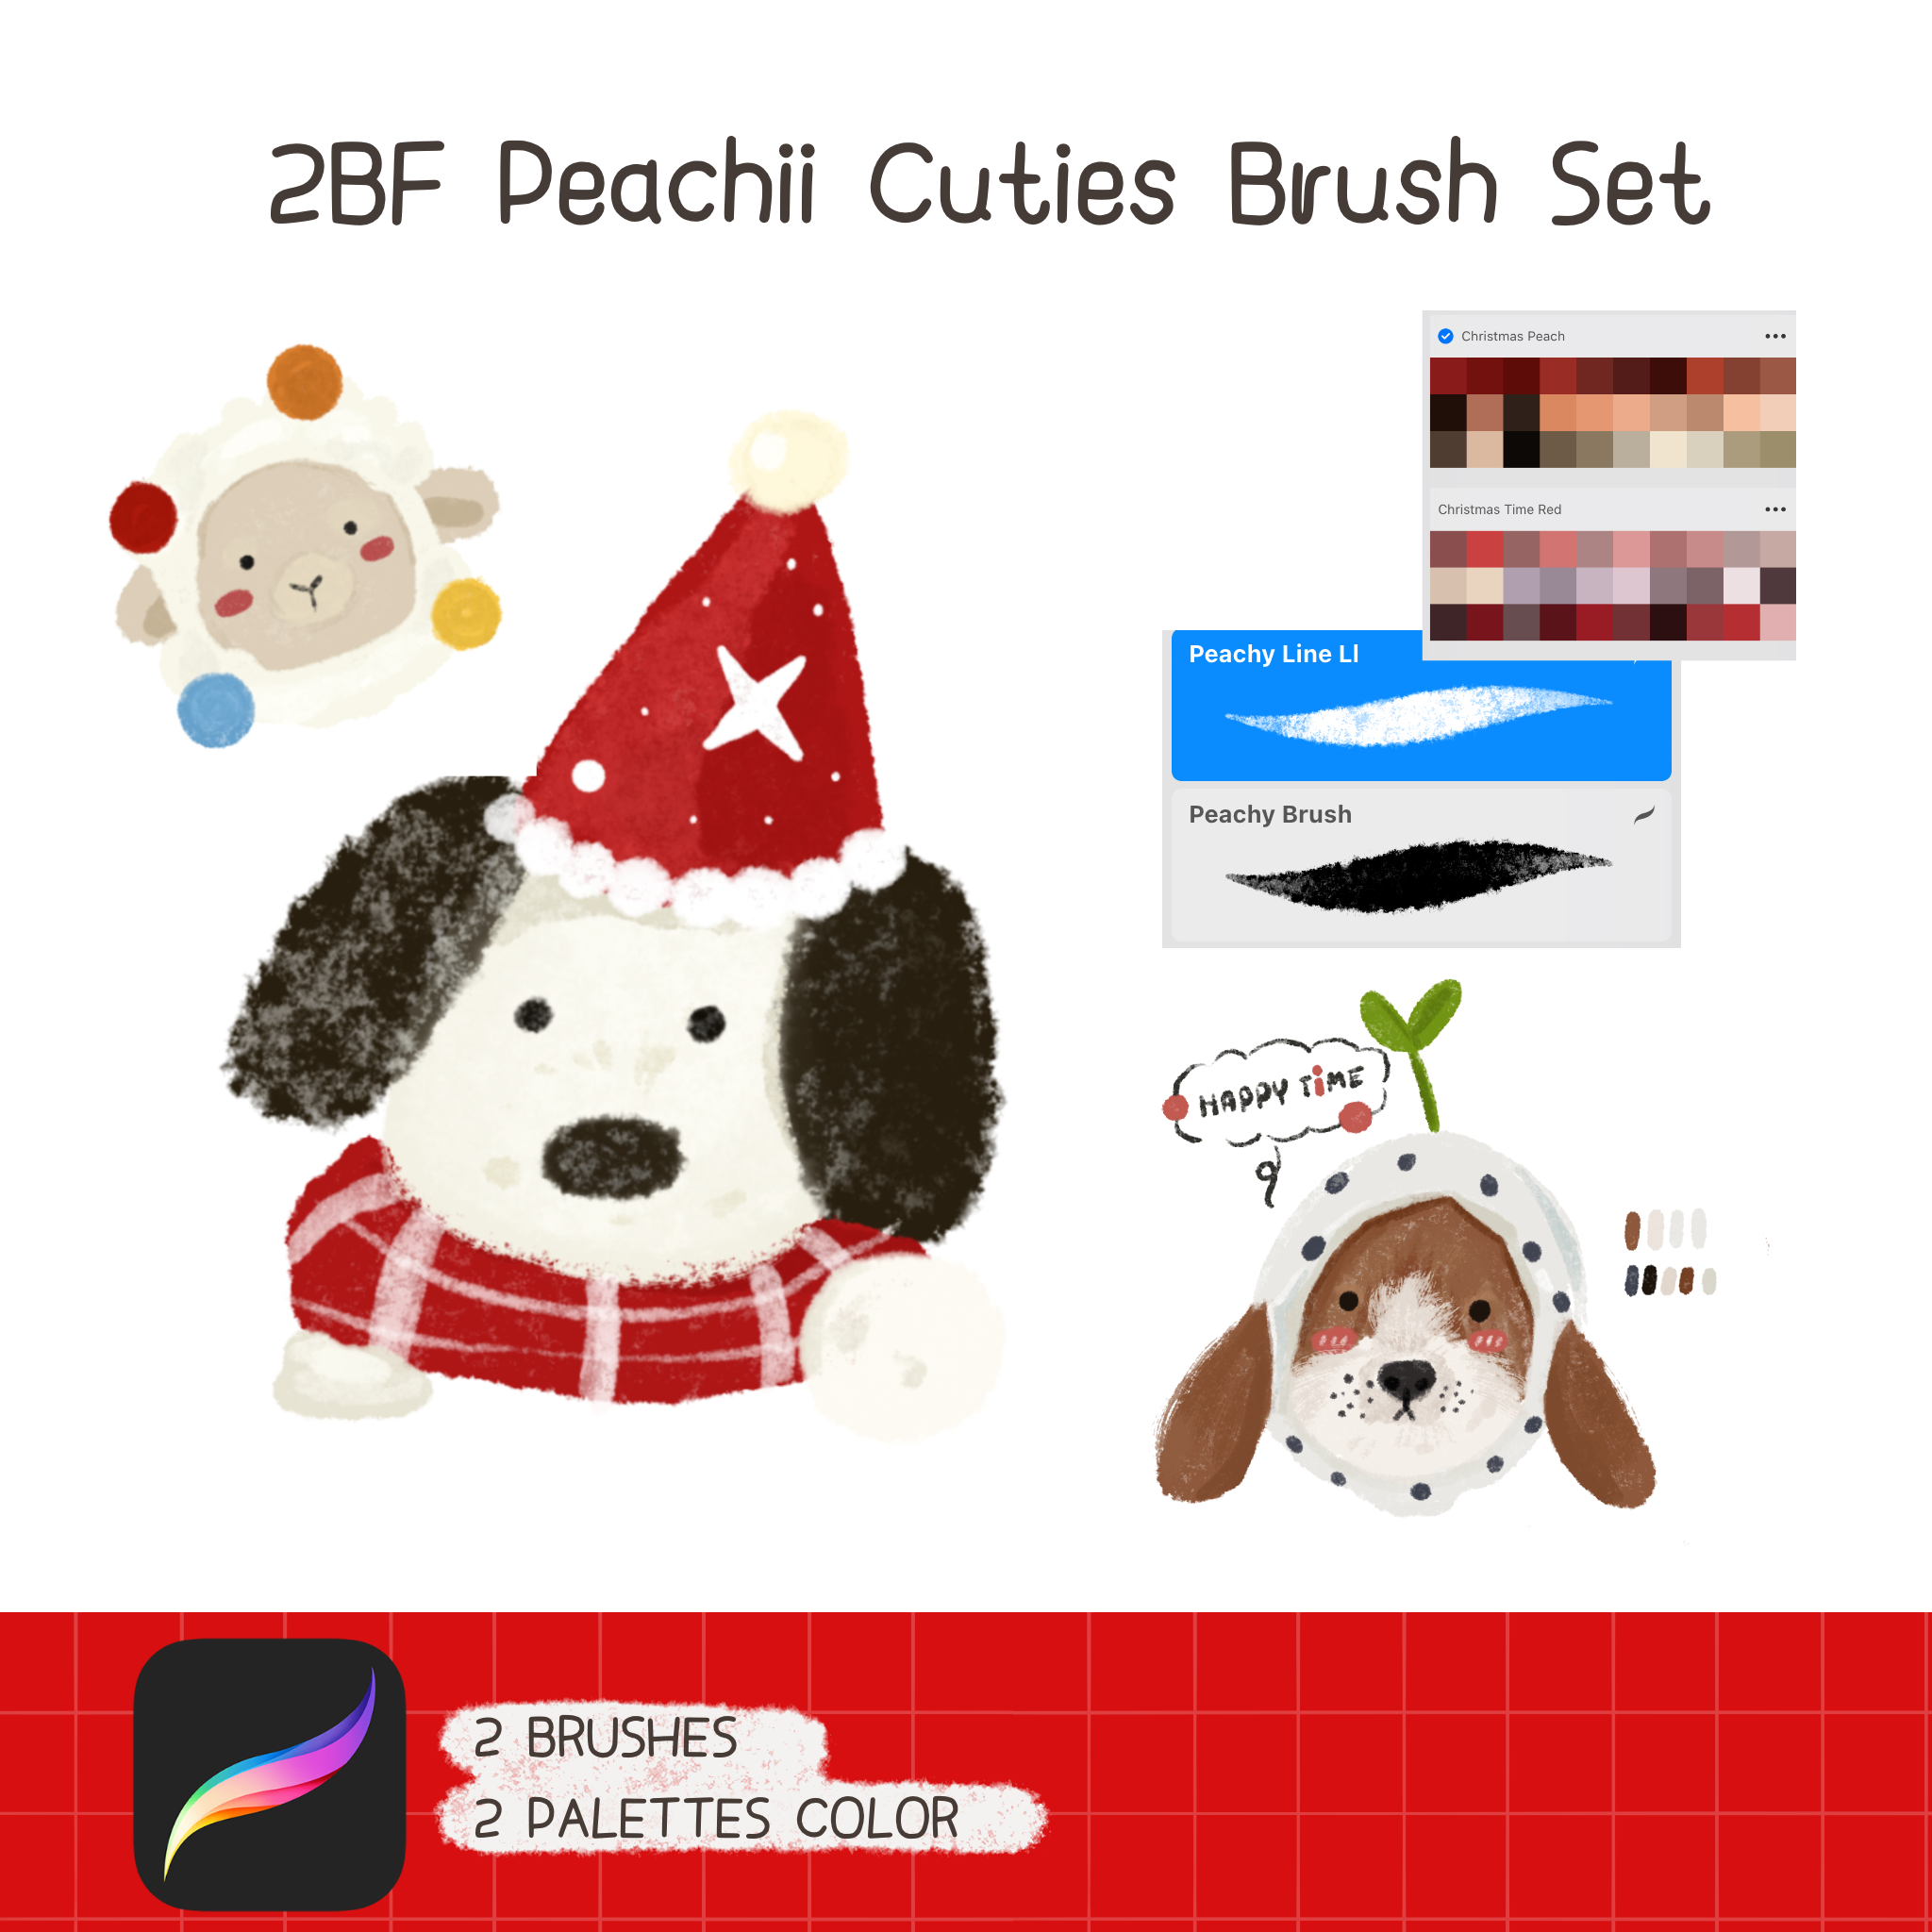 2BF Peachii Cuties Brush Set